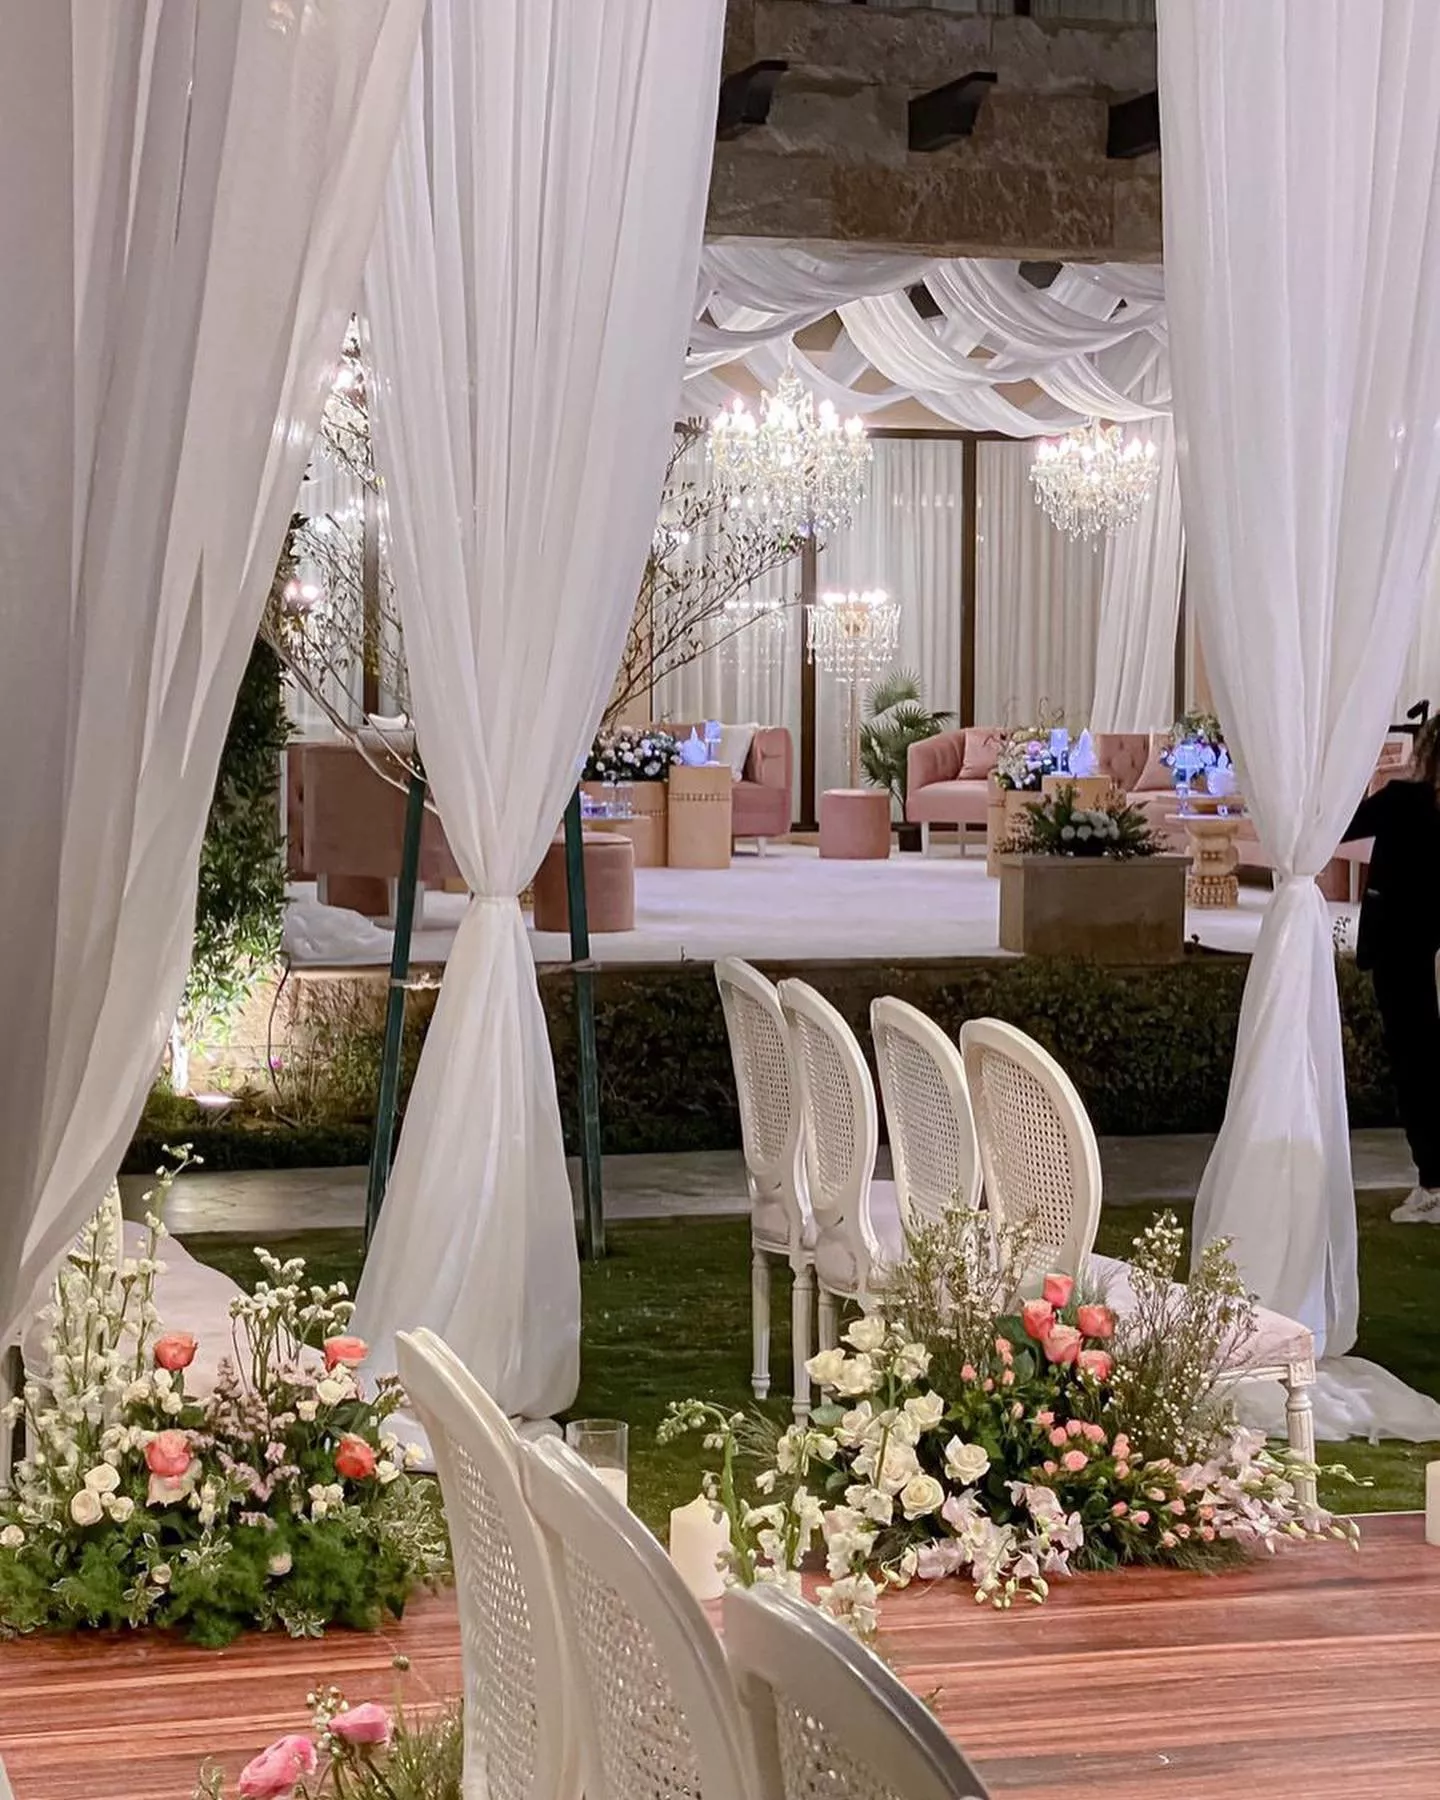 داليا مبارك تحتفل بذكرى زواجها الخامسة في الرياض وسط أجواء فخمة